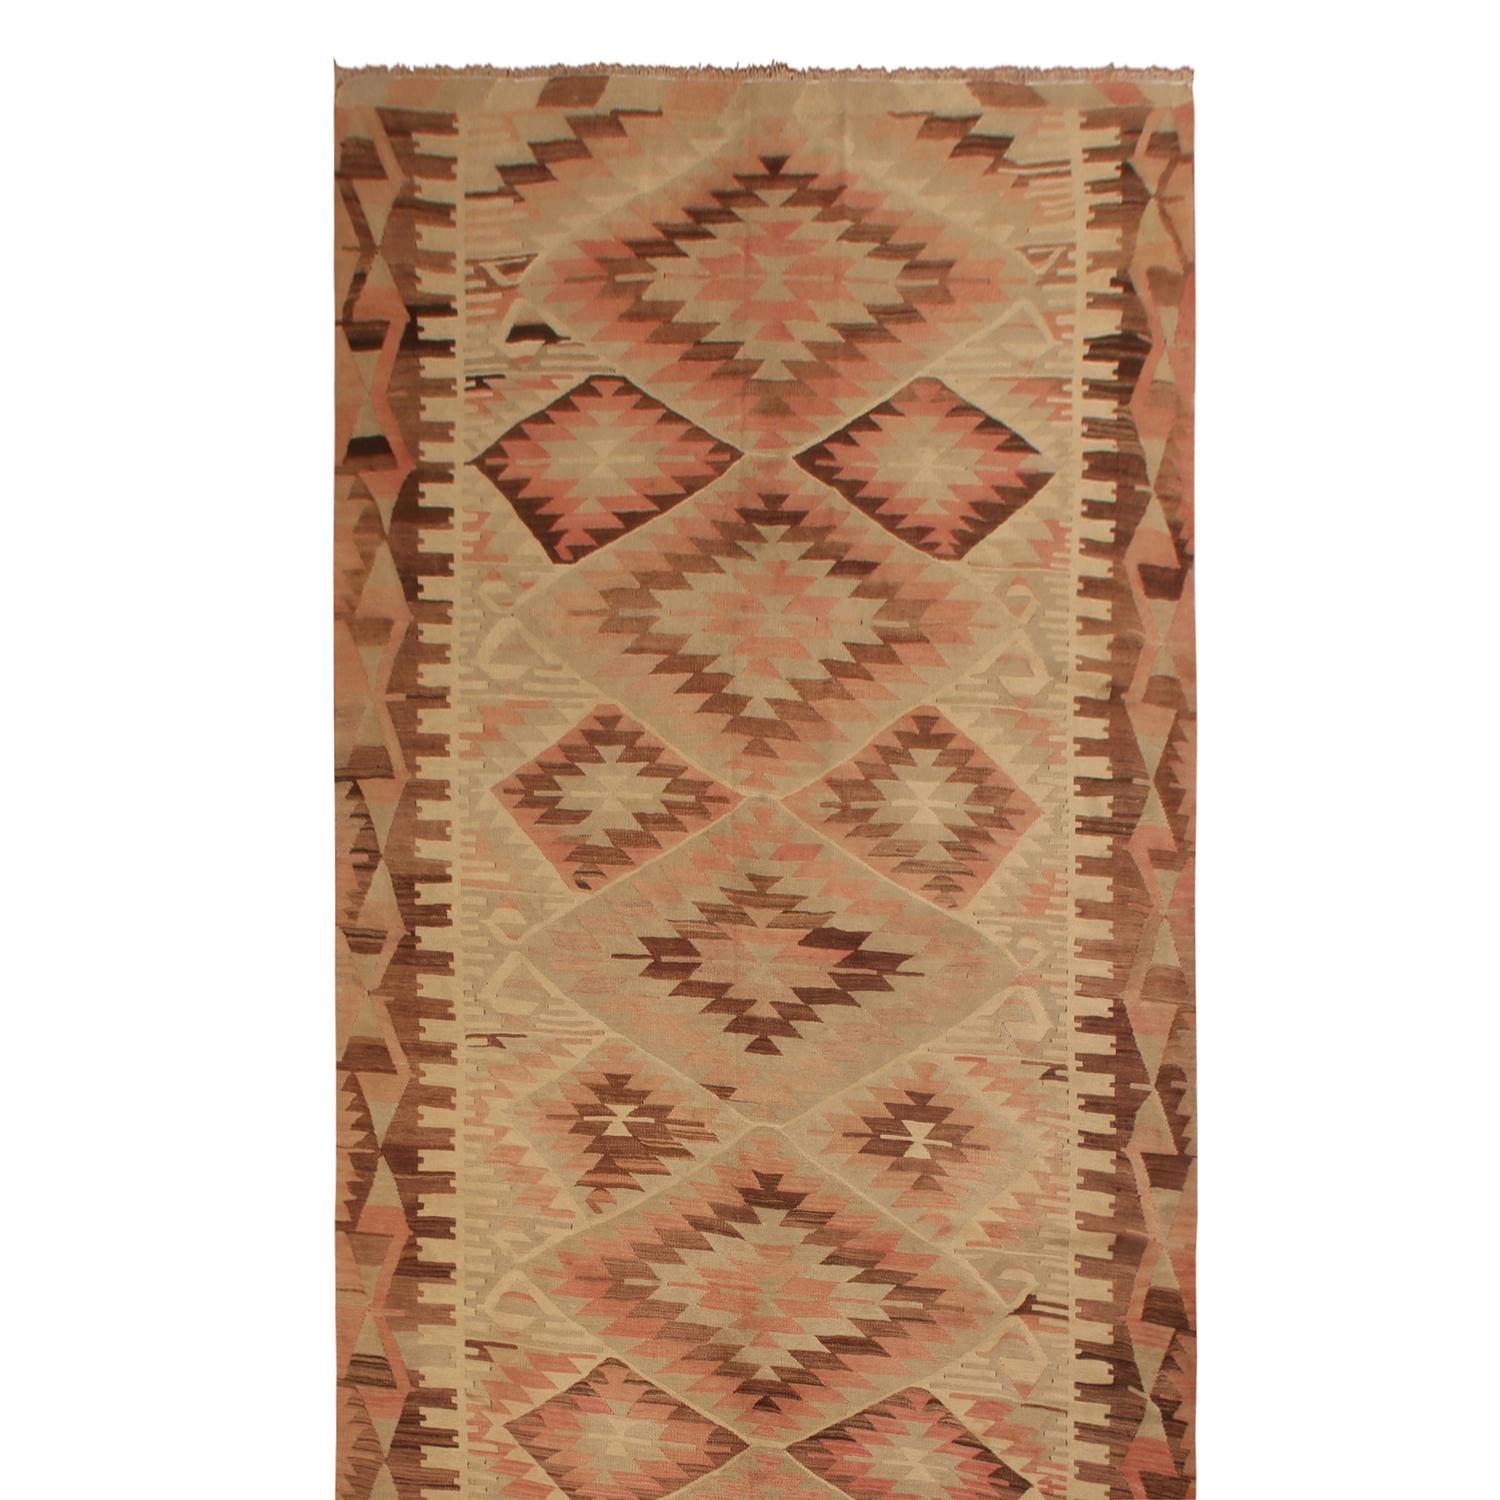 Originaire de Turquie entre 1940-1950, ce tapis Kilim vintage en laine de Kayseri bénéficie d'un fond atypique de couleurs rustiques et vives dans des motifs ondulants, avec une couleur rose saumon gracieusement vieillie qui complète son excellent